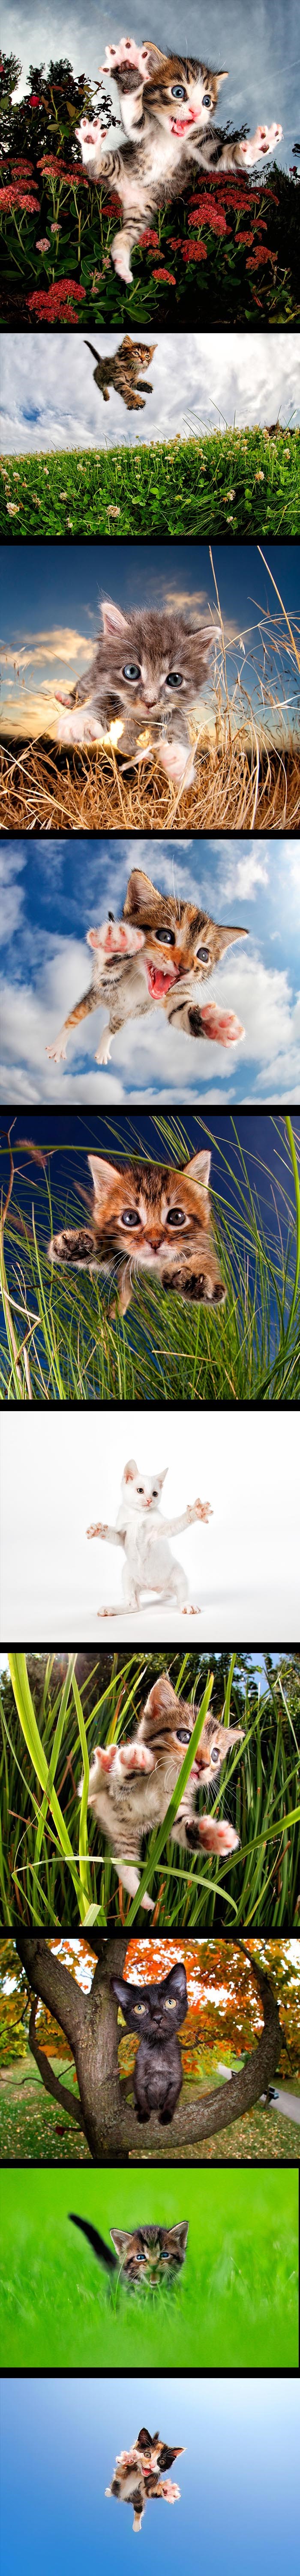 Preslatki leteći mačići: Fotograf privlači pozornost na mačiće koji nemaju doma